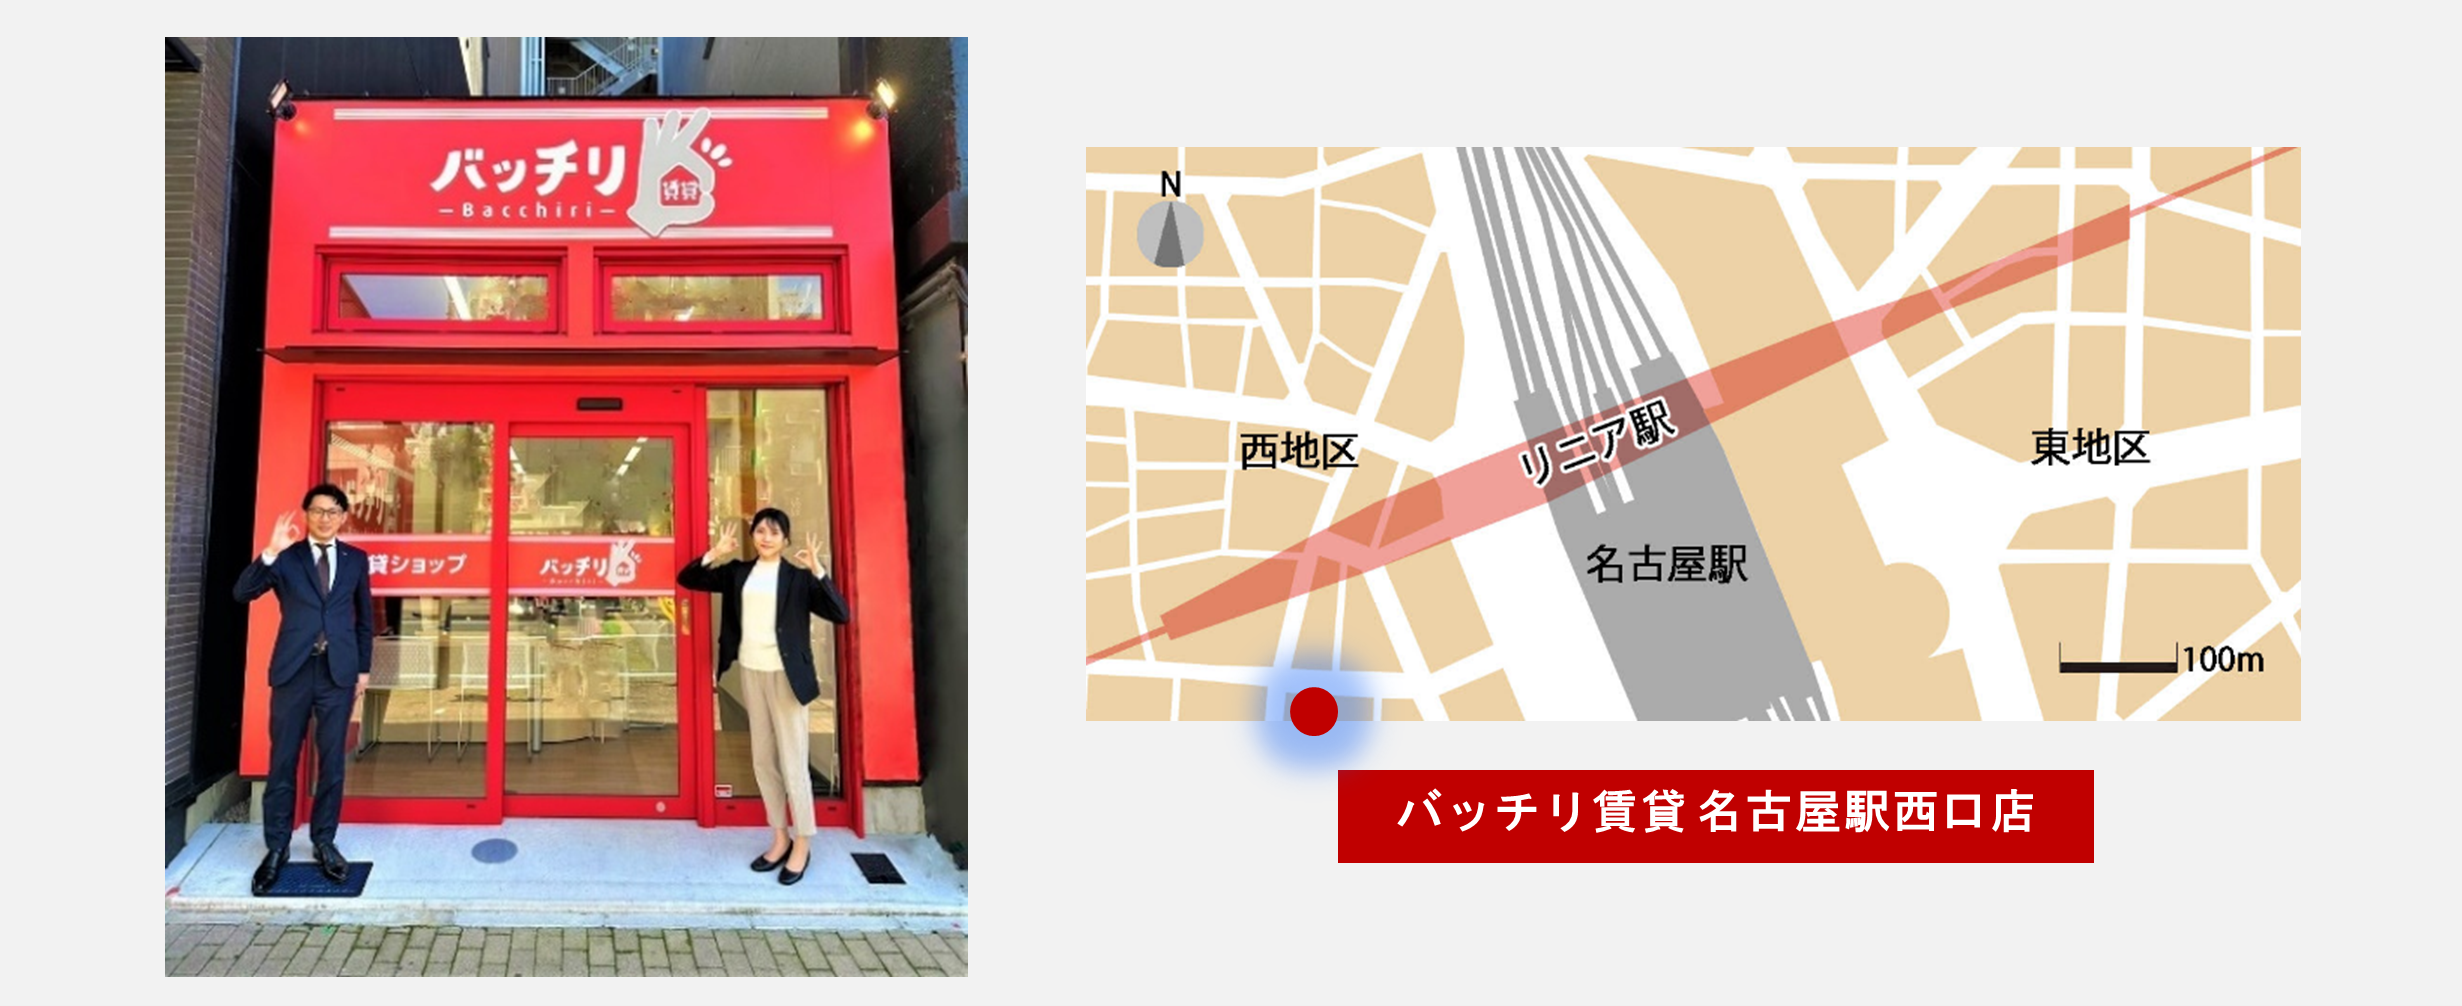 【株式会社シノケングループ】シノケンの賃貸仲介店舗「バッチリ賃貸」、名古屋へ進出のサブ画像1